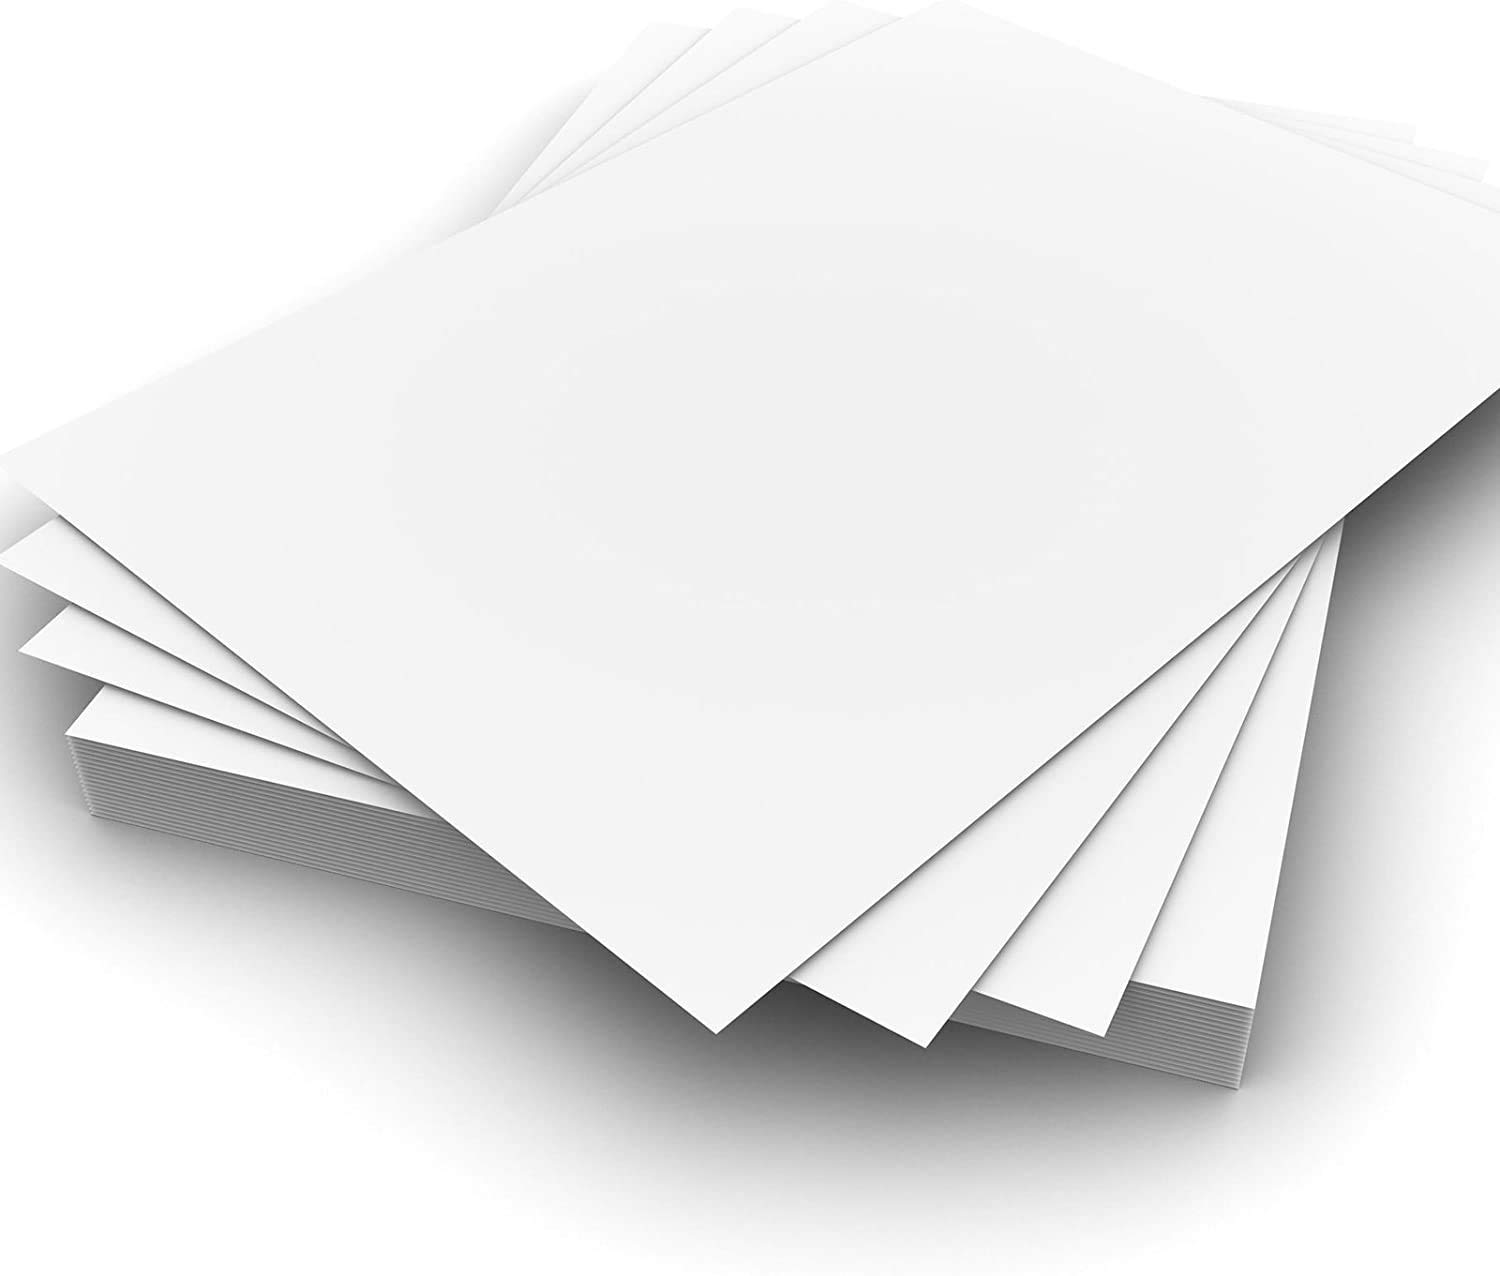 Poznavanje pakiranja — razlika između običnog bijelog natron papira i bijelog natron papira za hranu